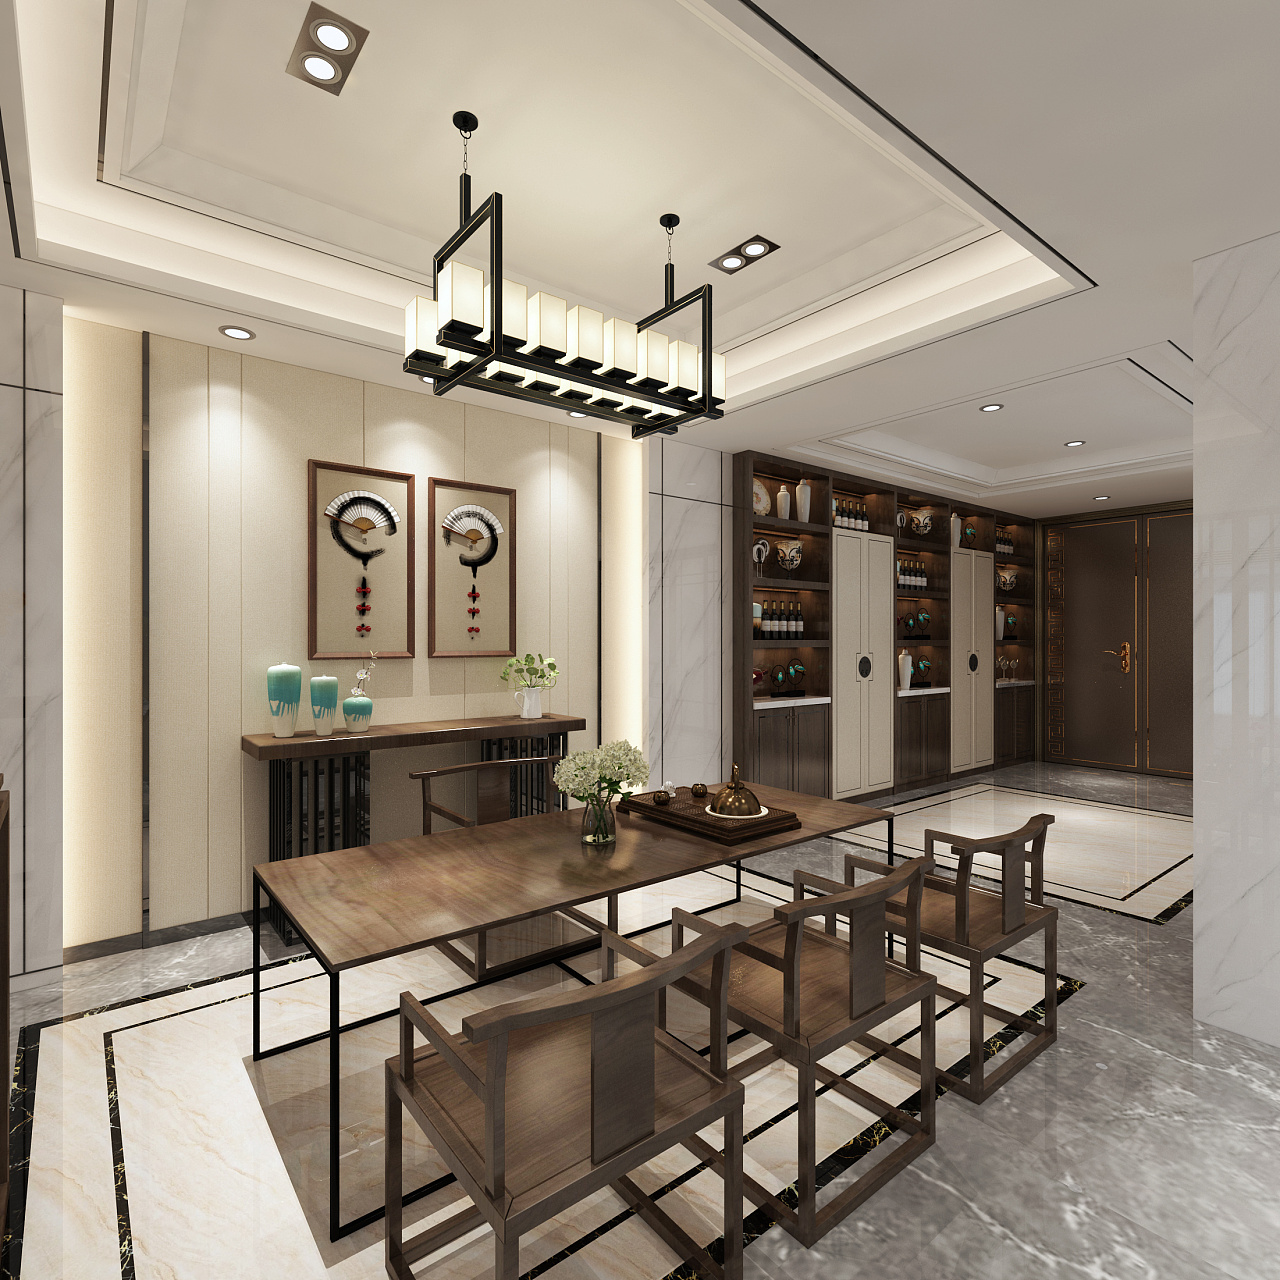 极简现代 客餐厅 - 效果图交流区-建E室内设计网